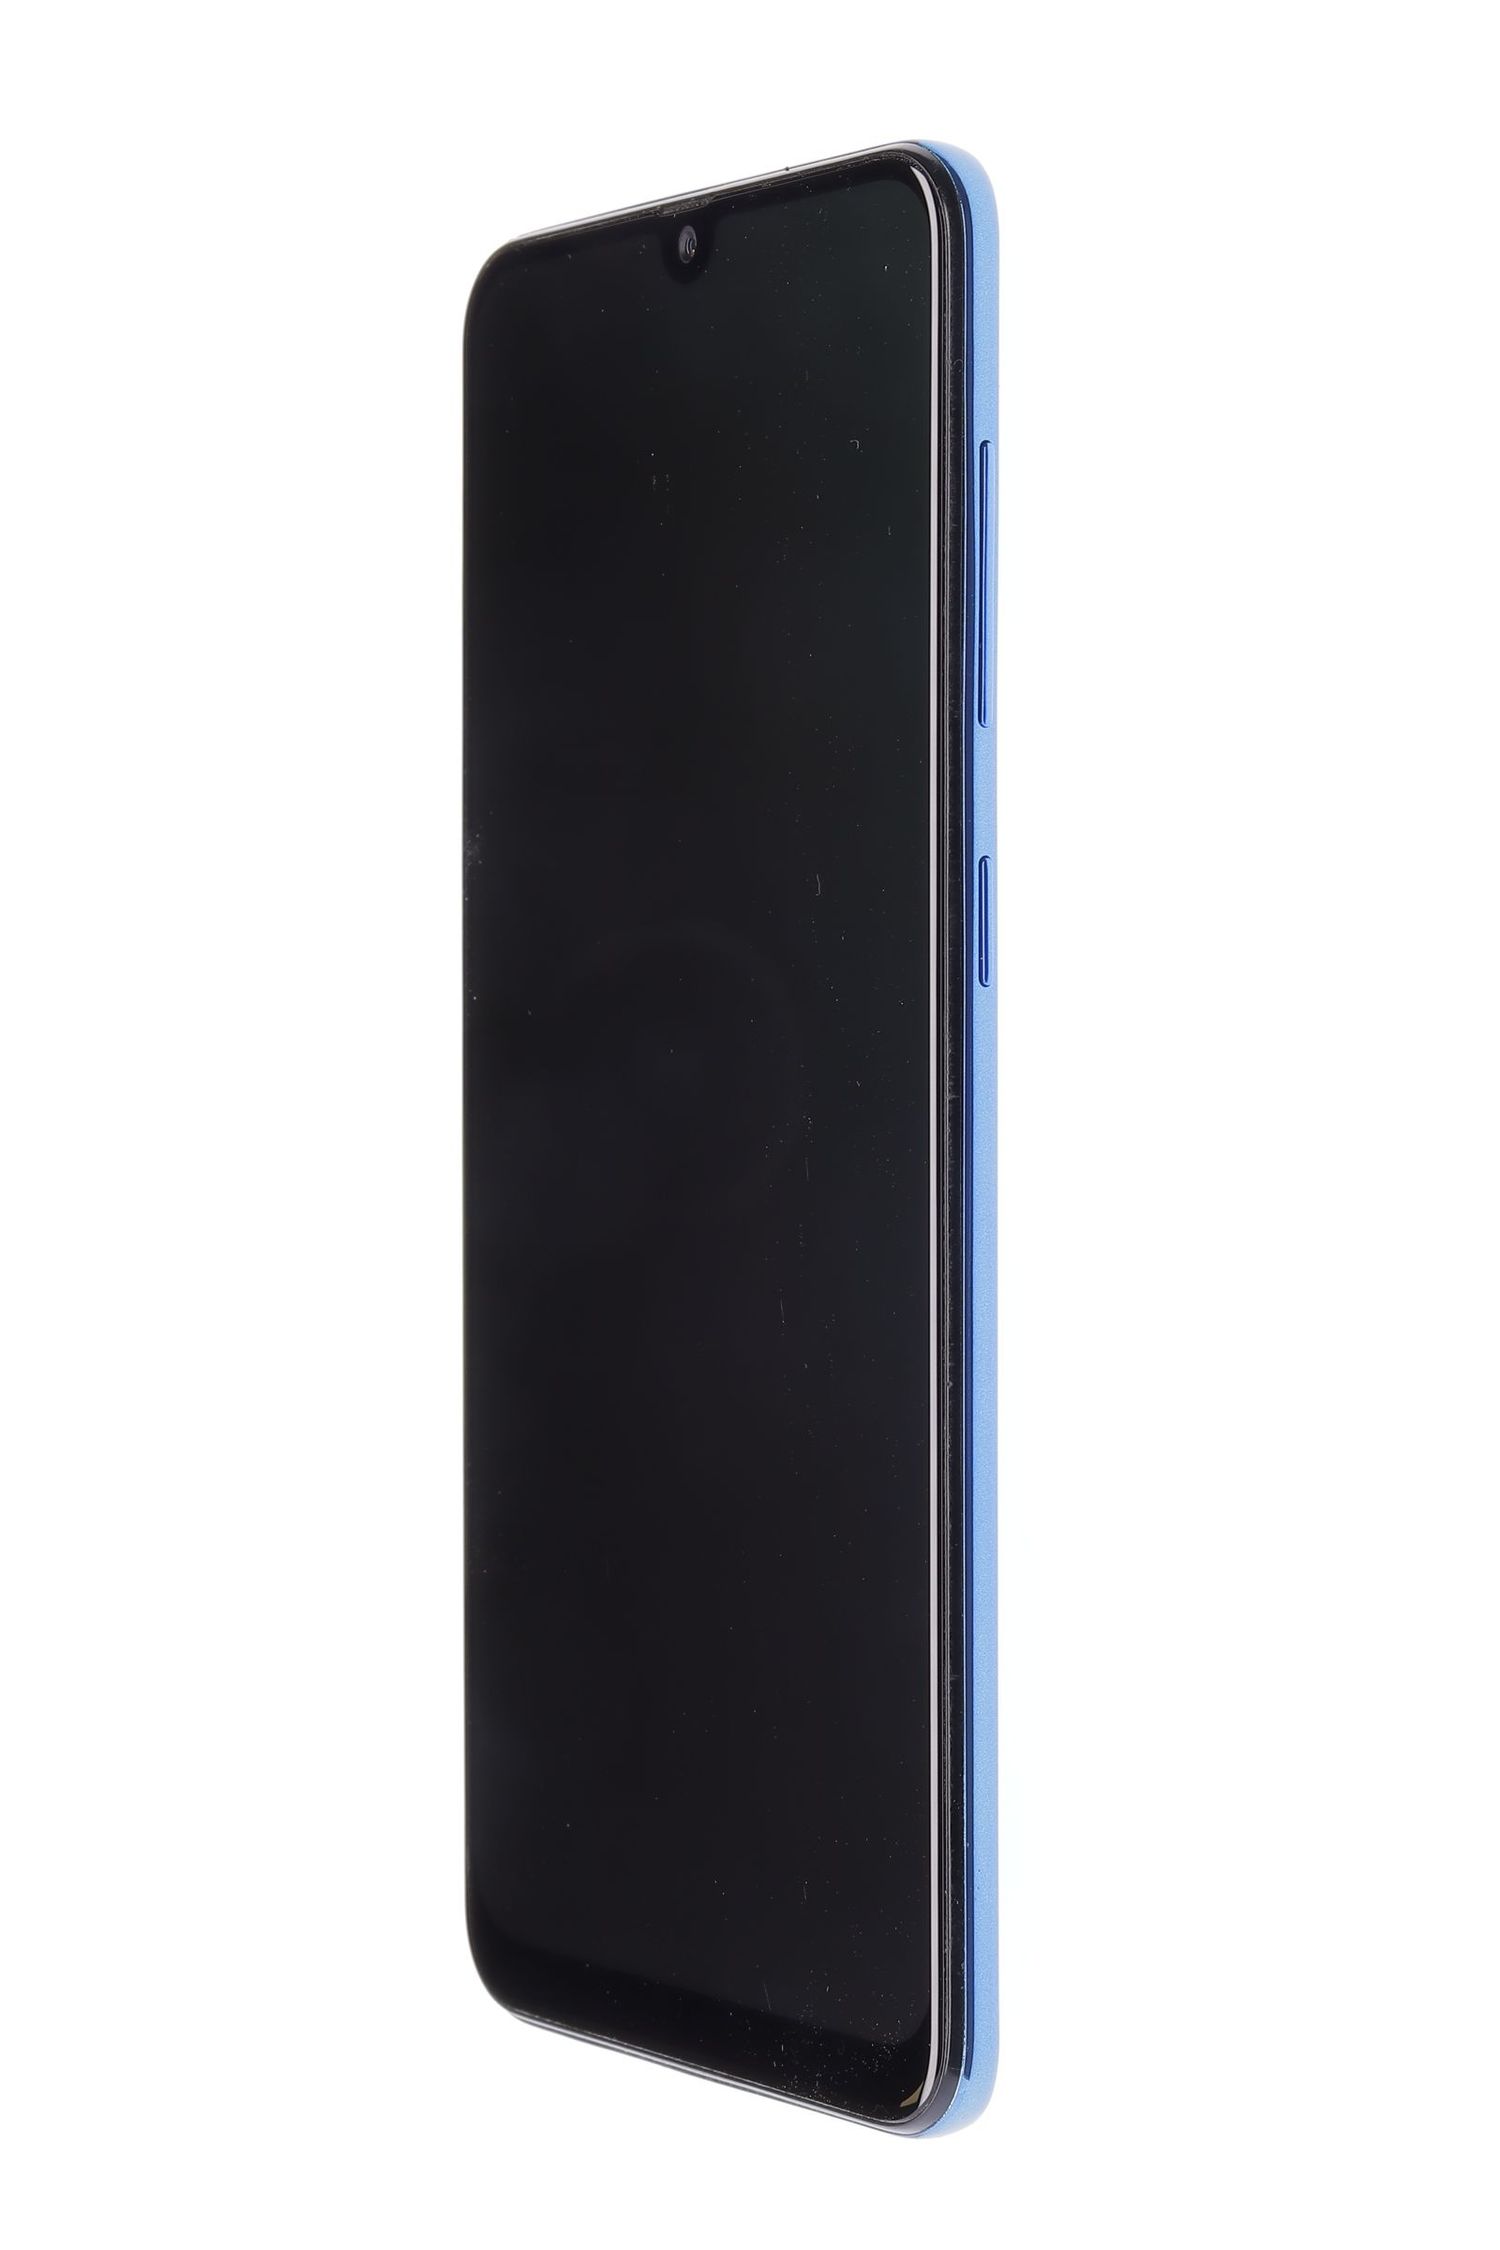 Telefon mobil Samsung Galaxy A50 (2019) Dual Sim, Blue, 128 GB, Foarte Bun